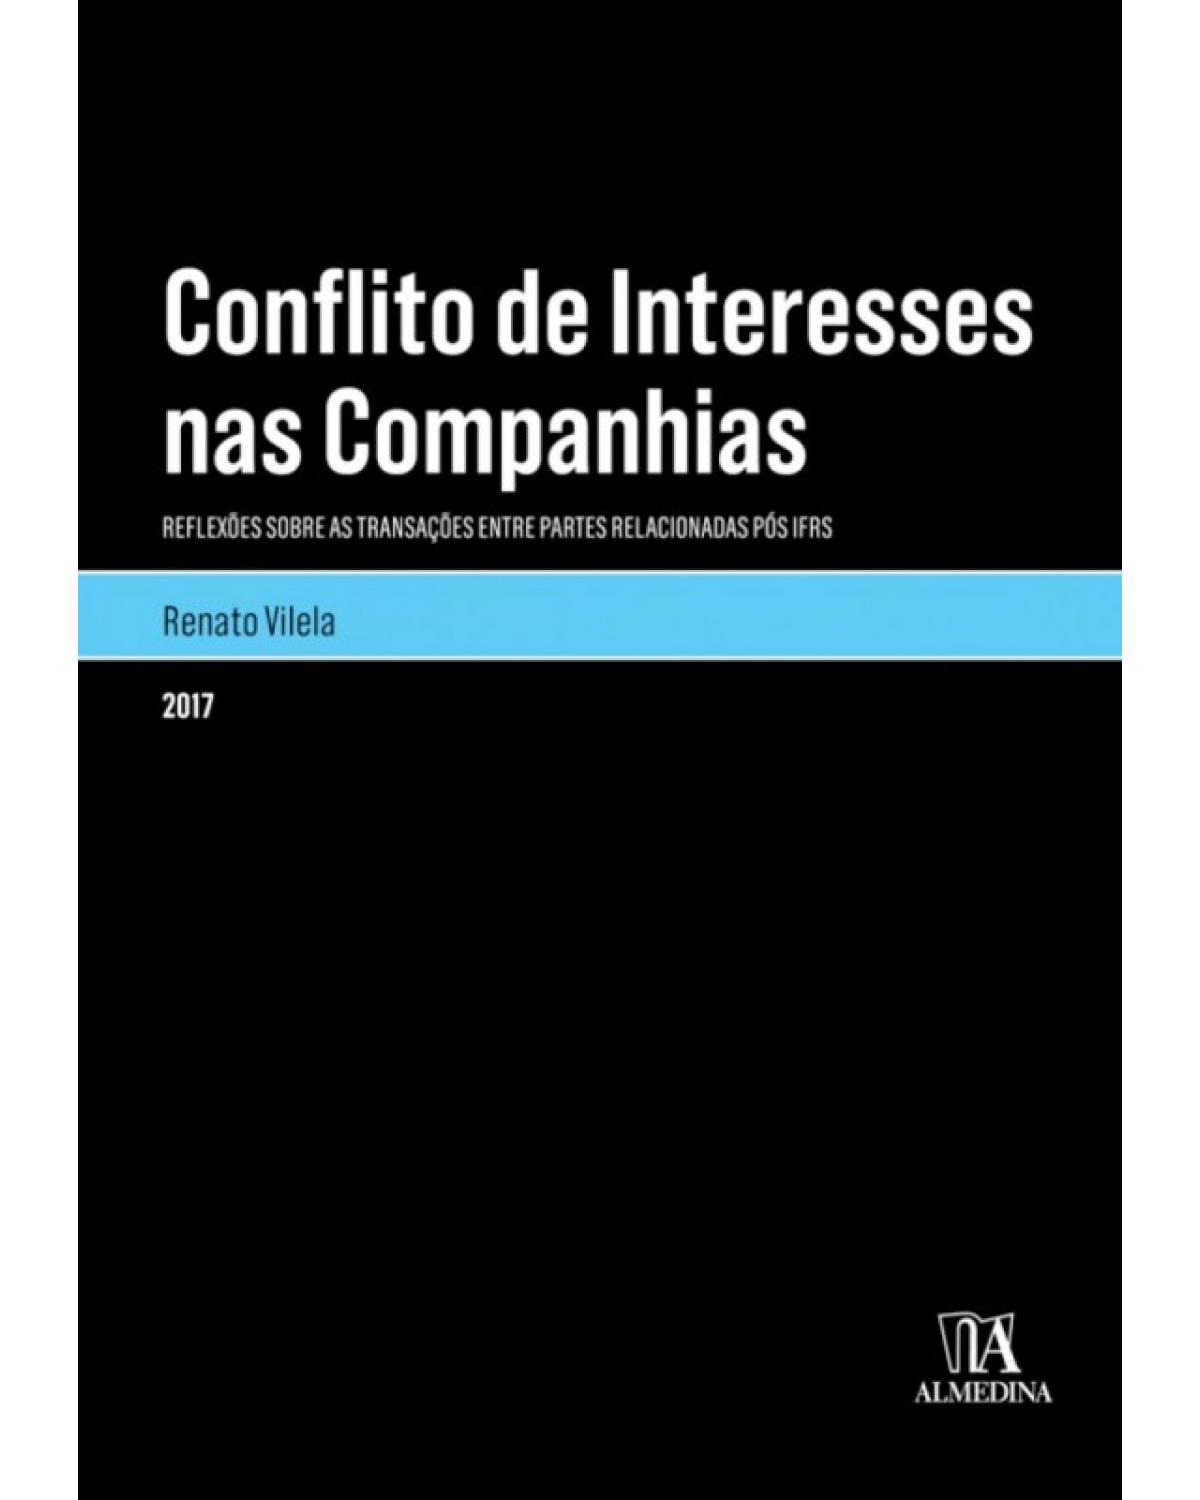 Conflito de interesses nas companhias - Reflexões sobre as transações entre partes relacionadas pós IFRS - 1ª Edição | 2017